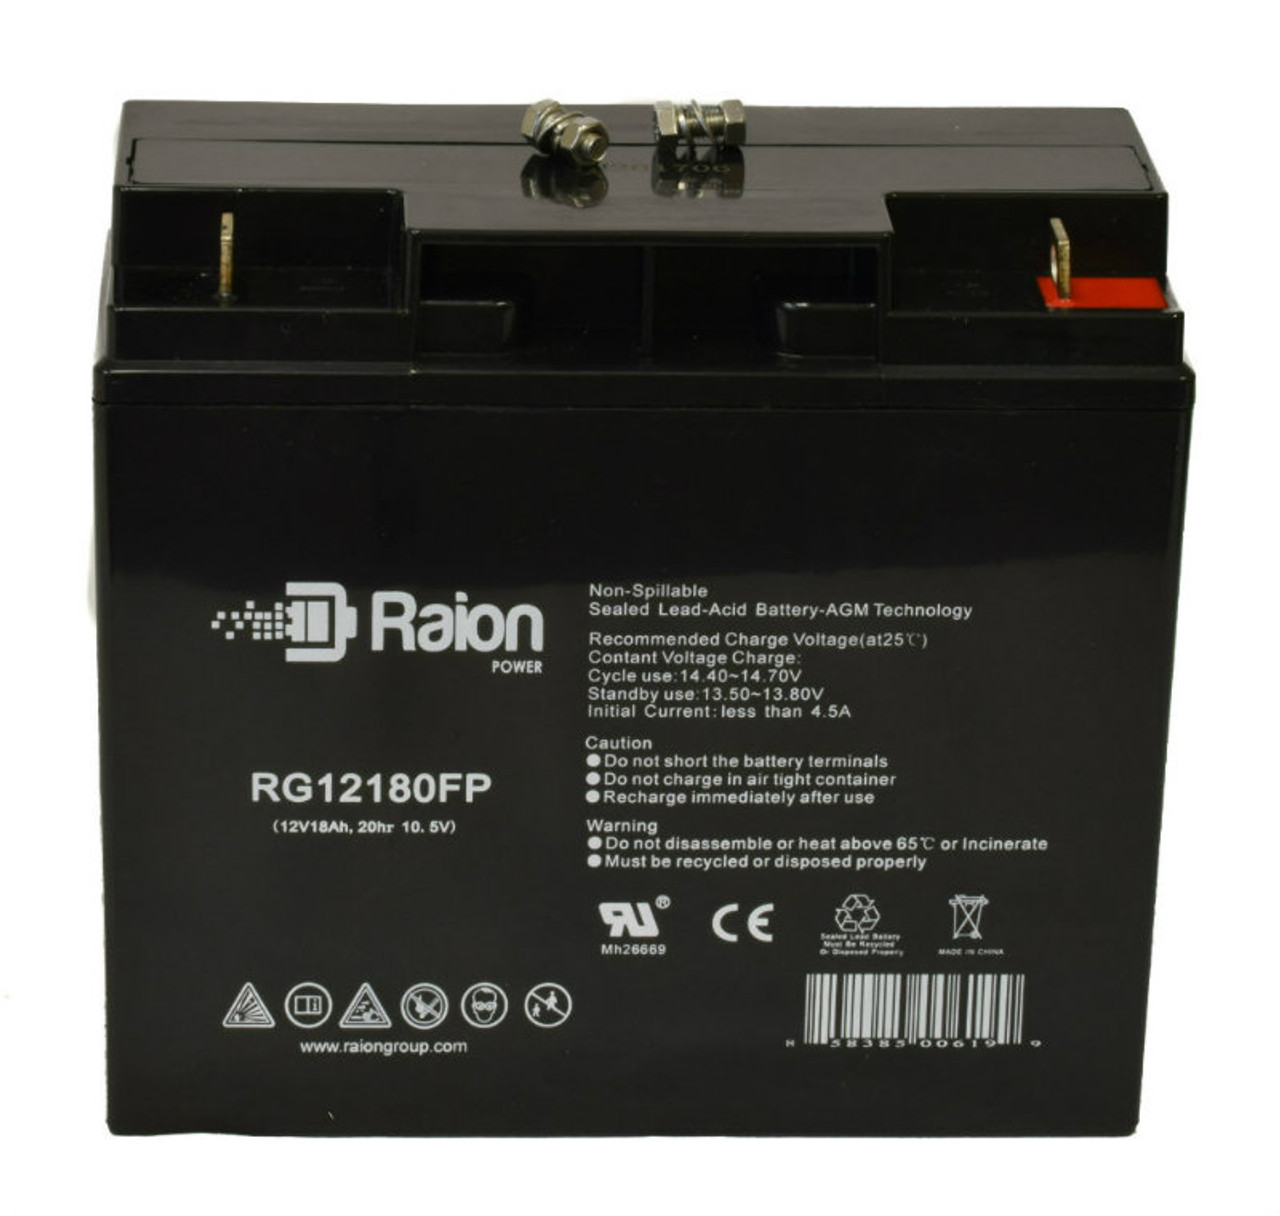 Raion Power RG12180FP 12V 18Ah Lead Acid Battery for AWC GT5